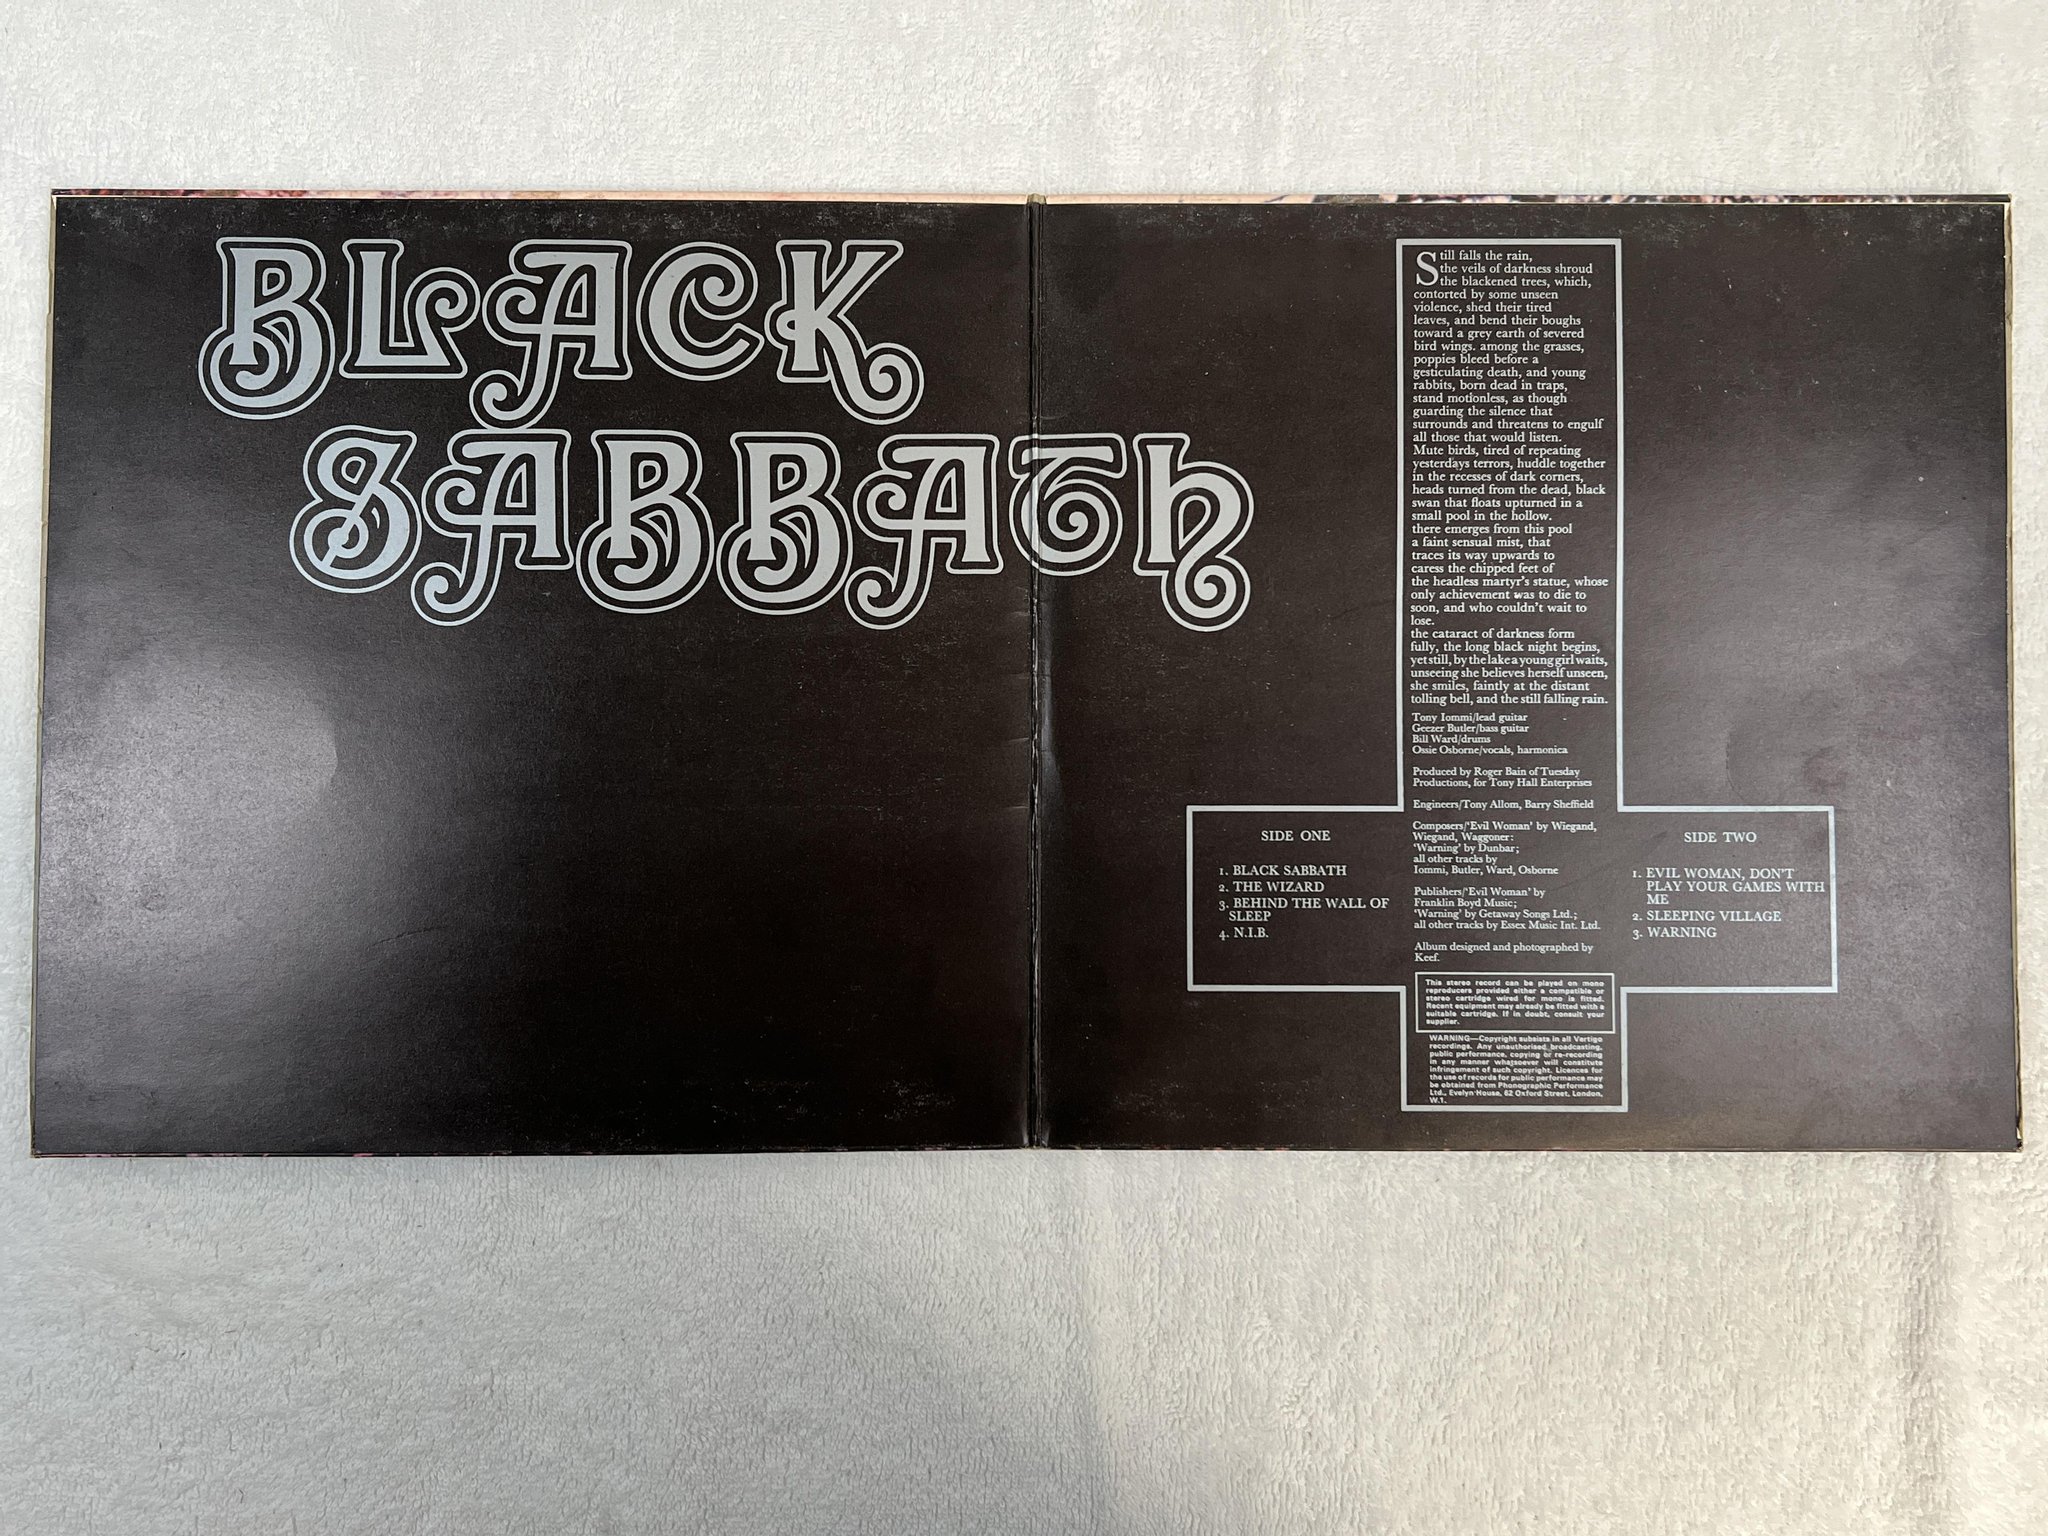 Omslagsbild för skivan BLACK SABBATH s/t LP -70 UK VERTIGO swirl 847 903 VTY